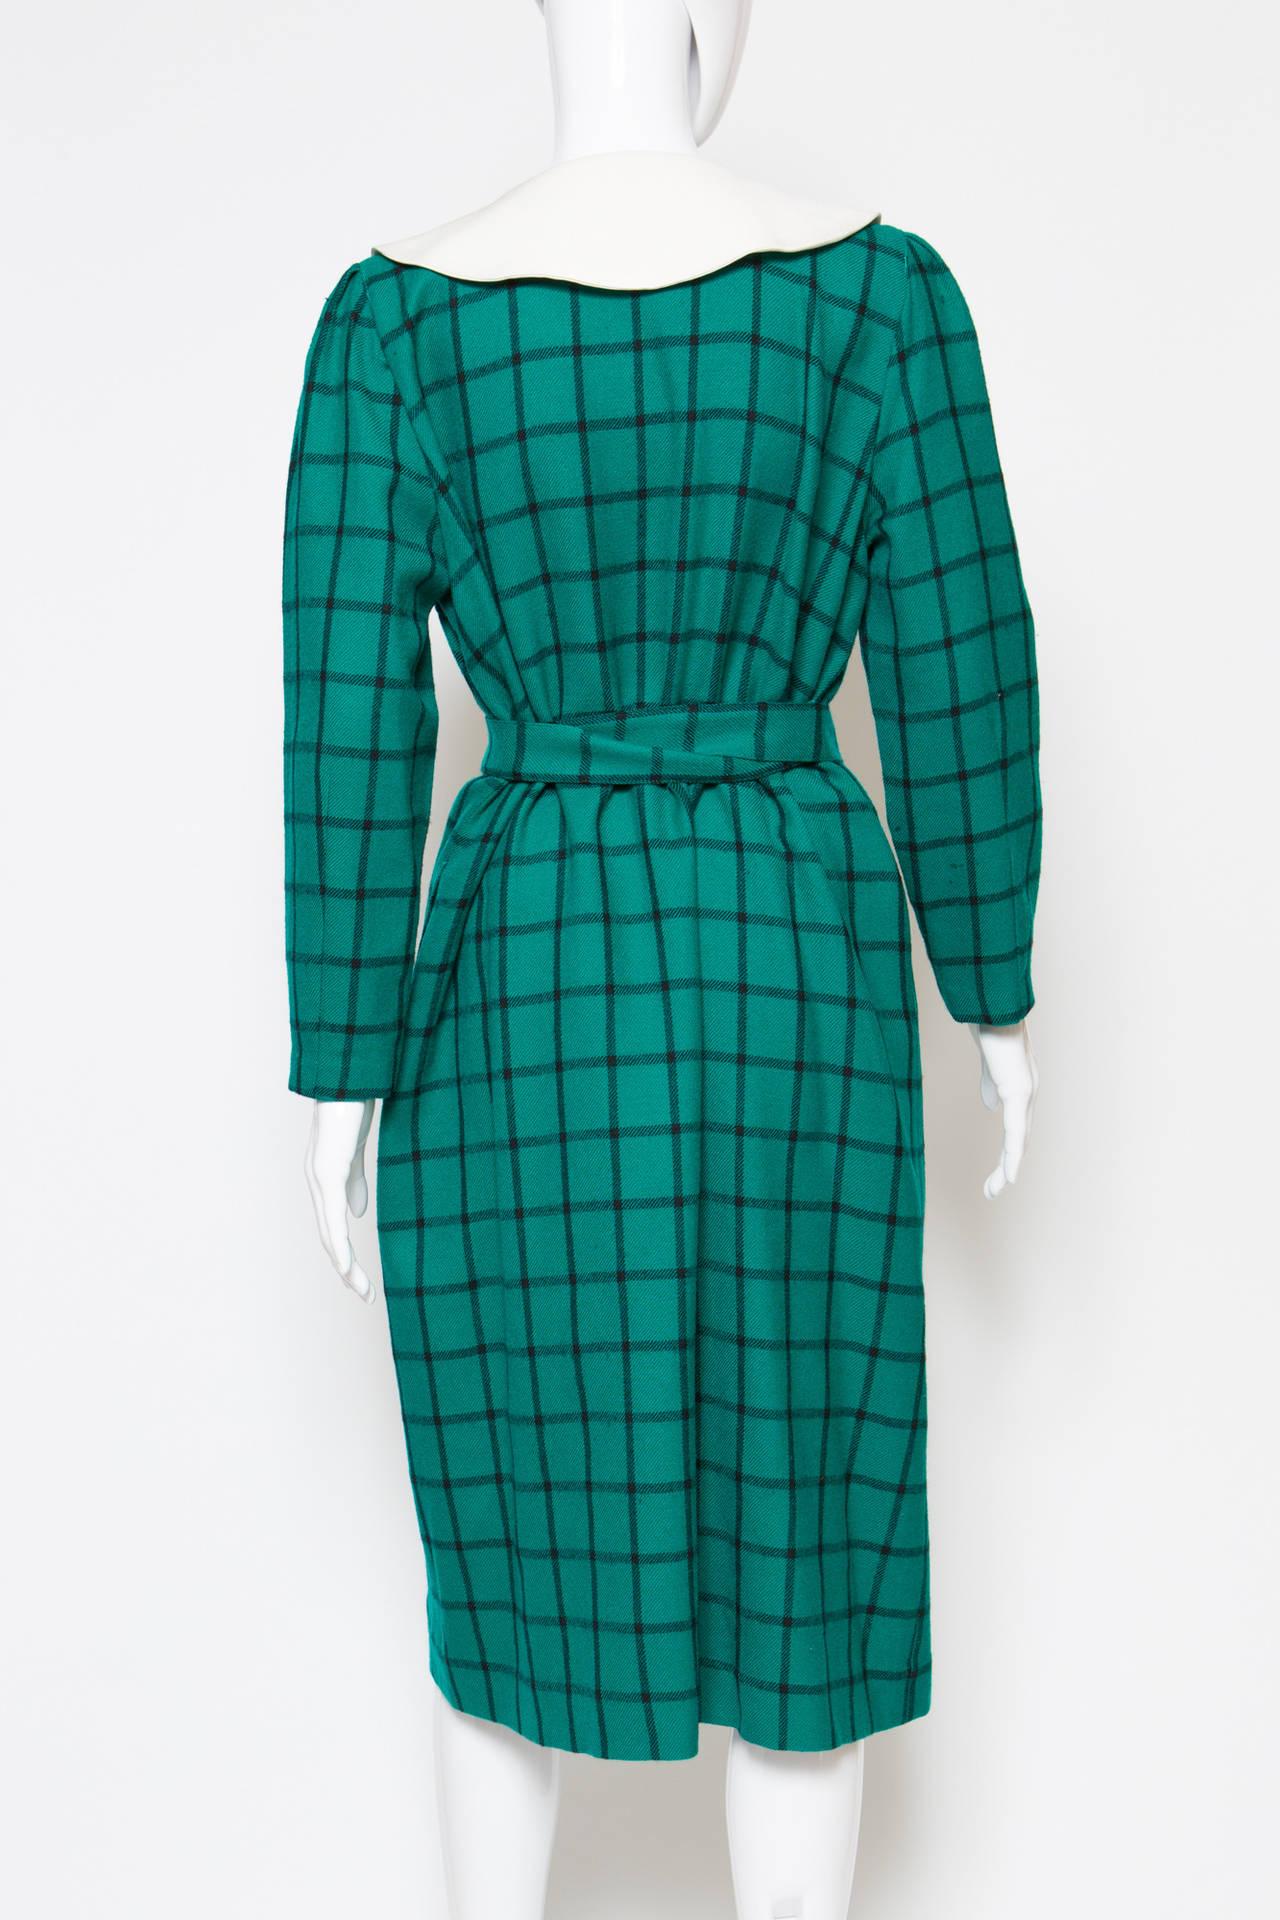 Pierre Cardin Wool Green Dress For Sale 1